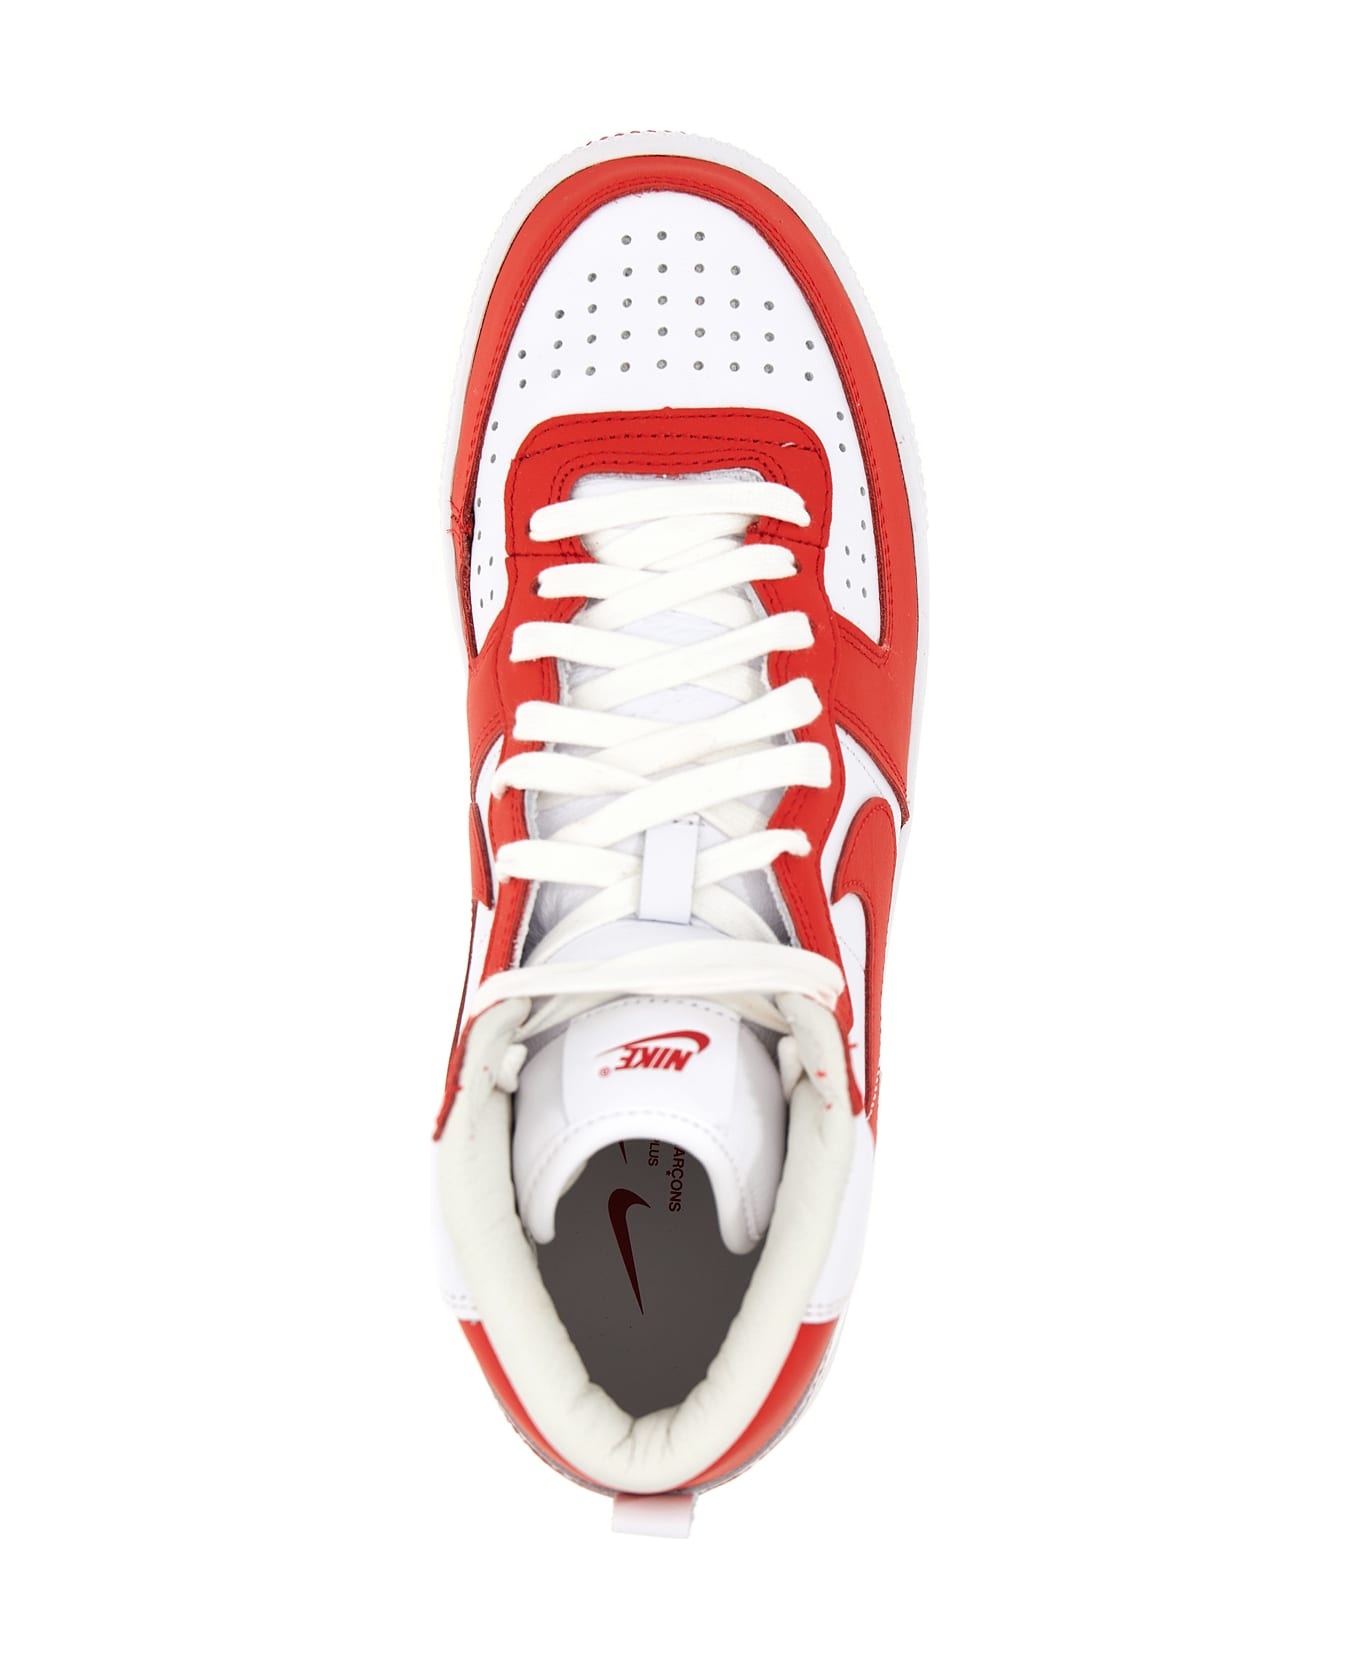 Comme Des Garçons Homme Plus X Nike coupon 'terminator' Sneaker - Rosso